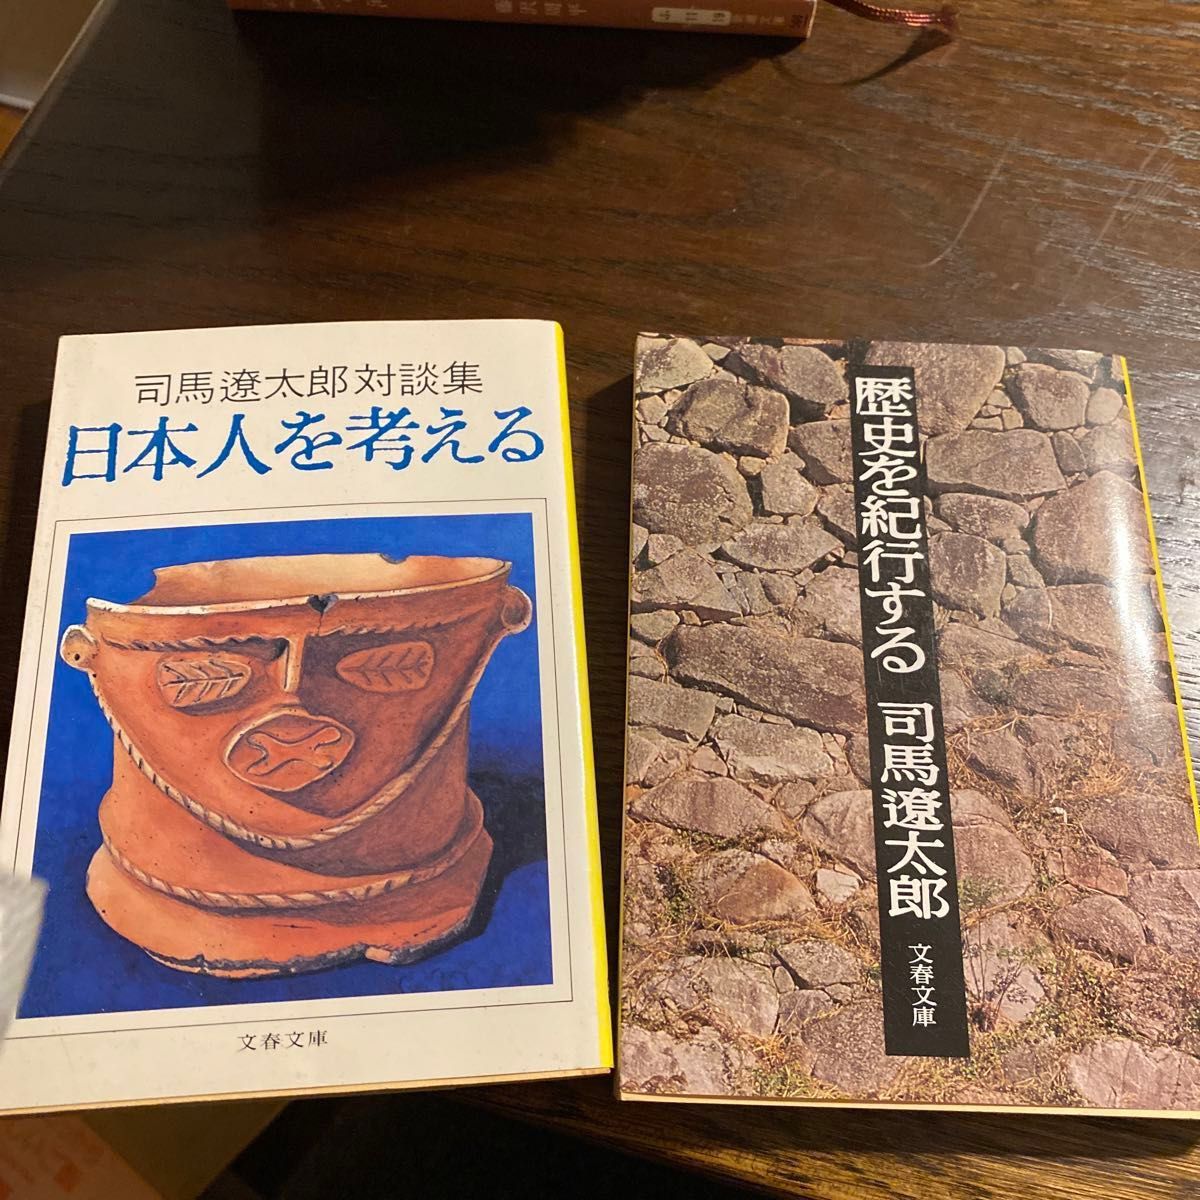 「日本人を考える 司馬遼太郎対談集」「歴史を紀行する」